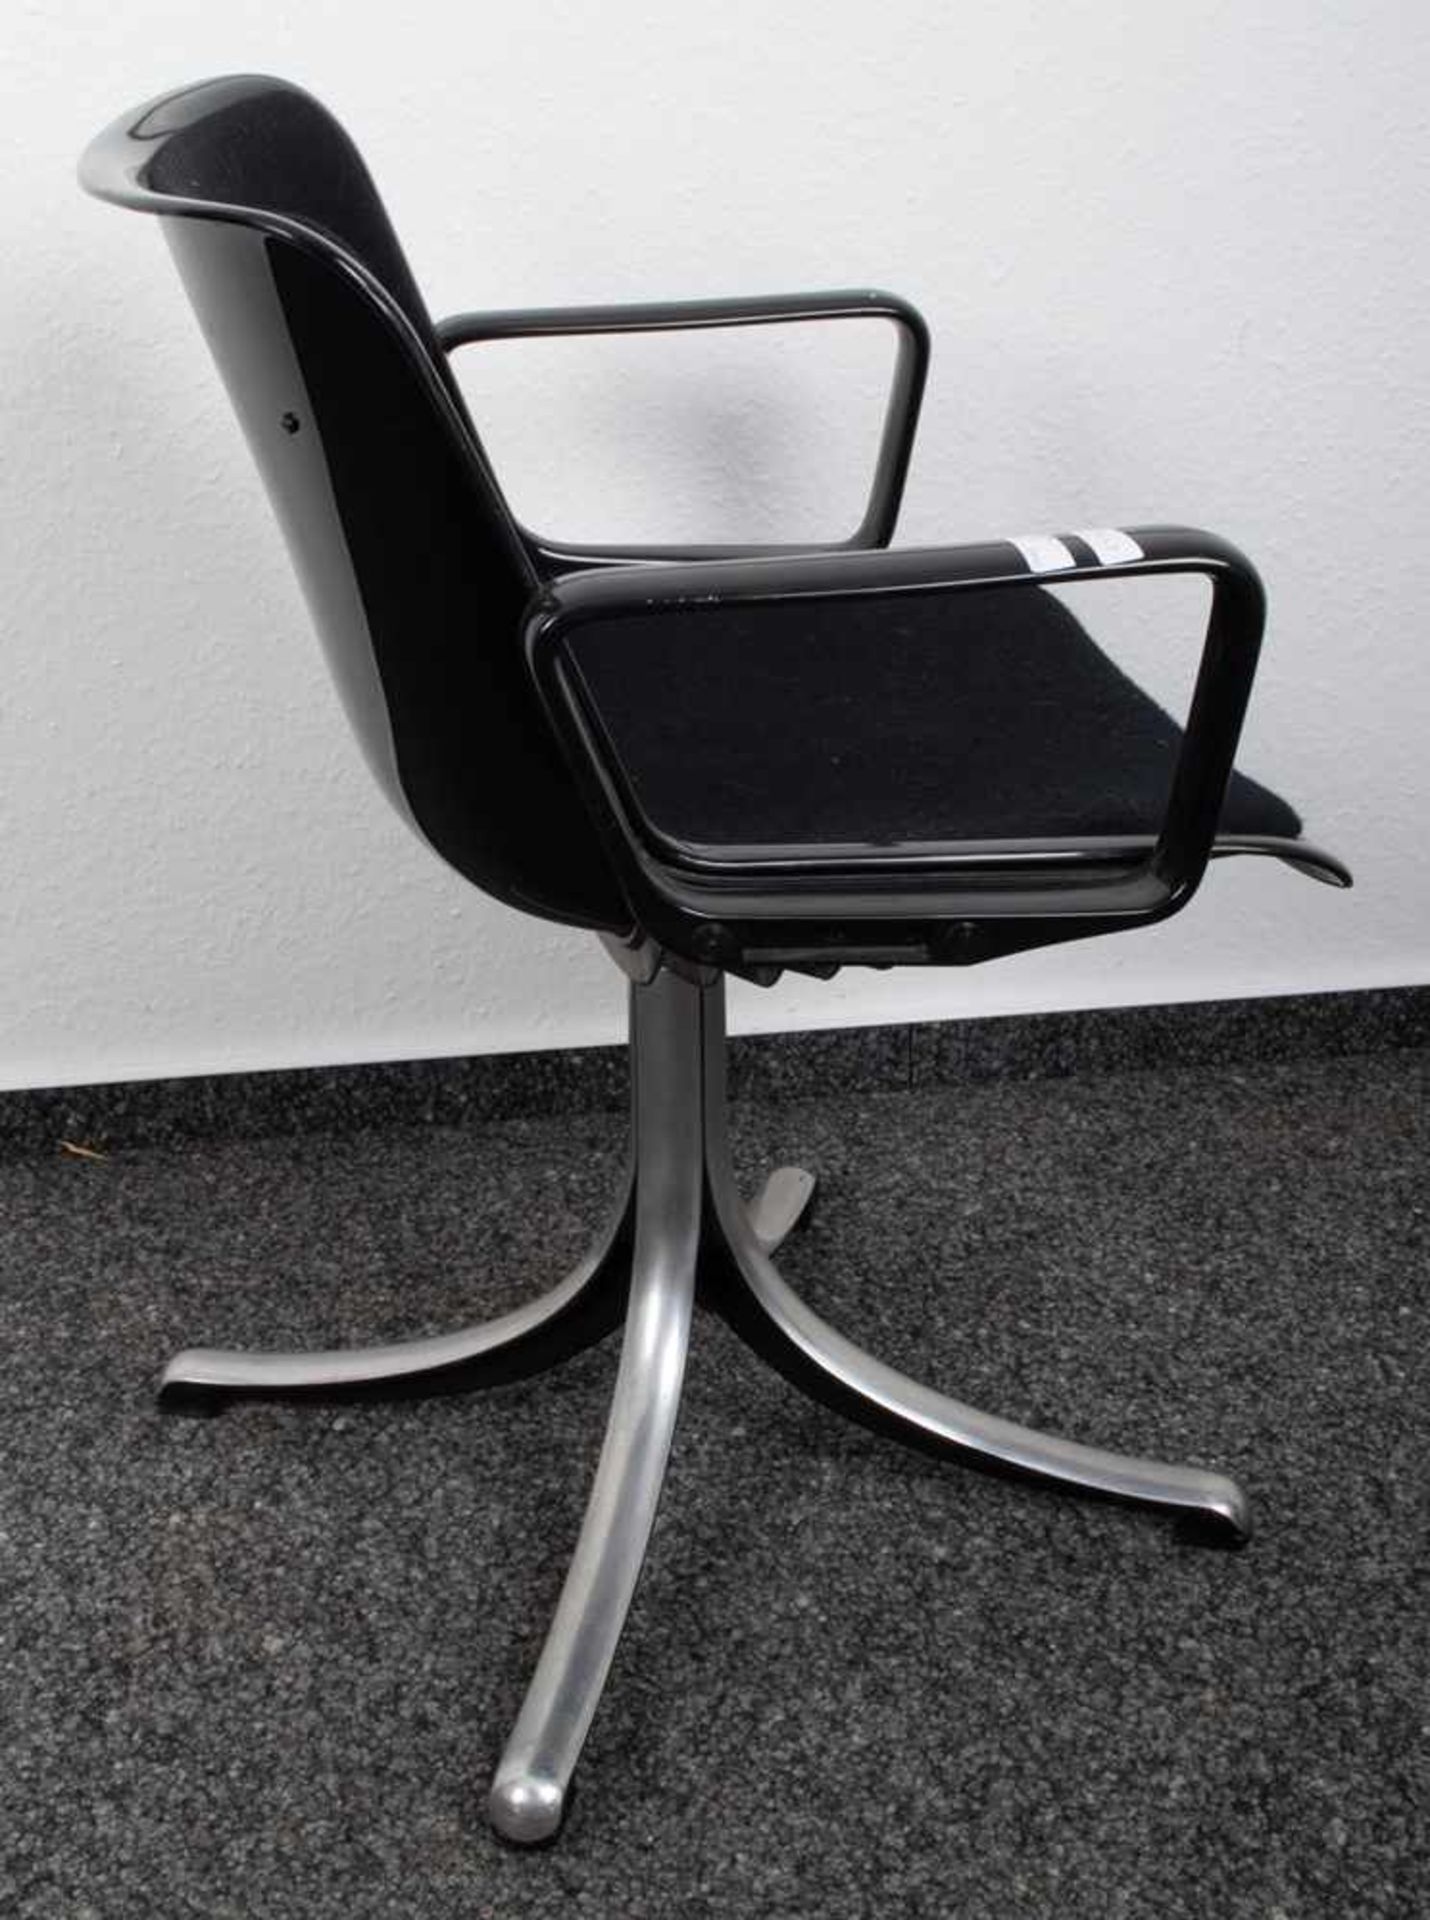 Schreibtisch-Drehstuhl/Bürostuhl. Italienisches Design um 1970. Vierpassiger Aluminiumfuß mit - Bild 2 aus 7